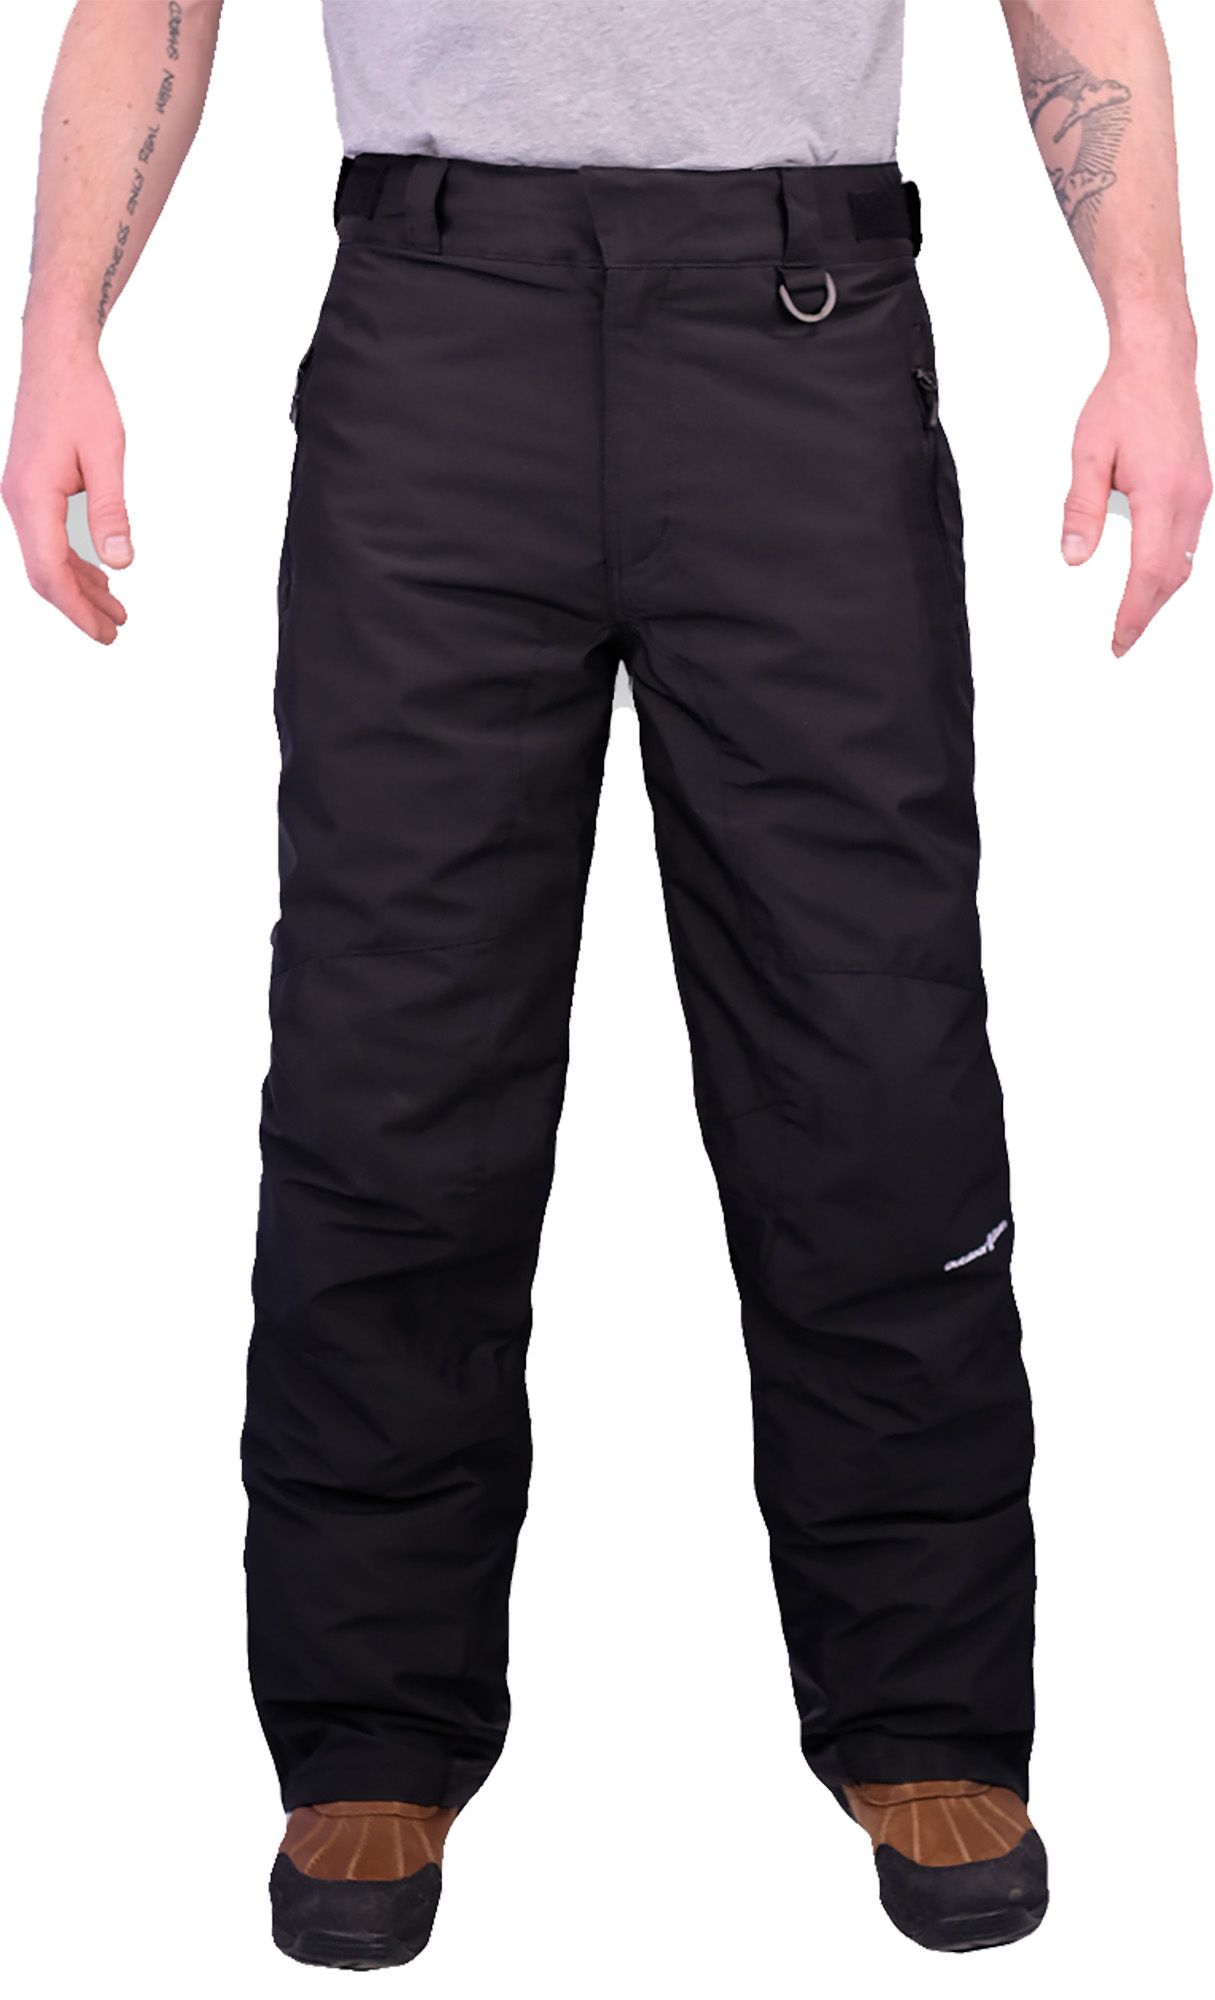 Photos - Ski Wear Outdoor Gear Men's Polar Pants, Medium, Black 18OGEMMPLRPNTXXXXAOA